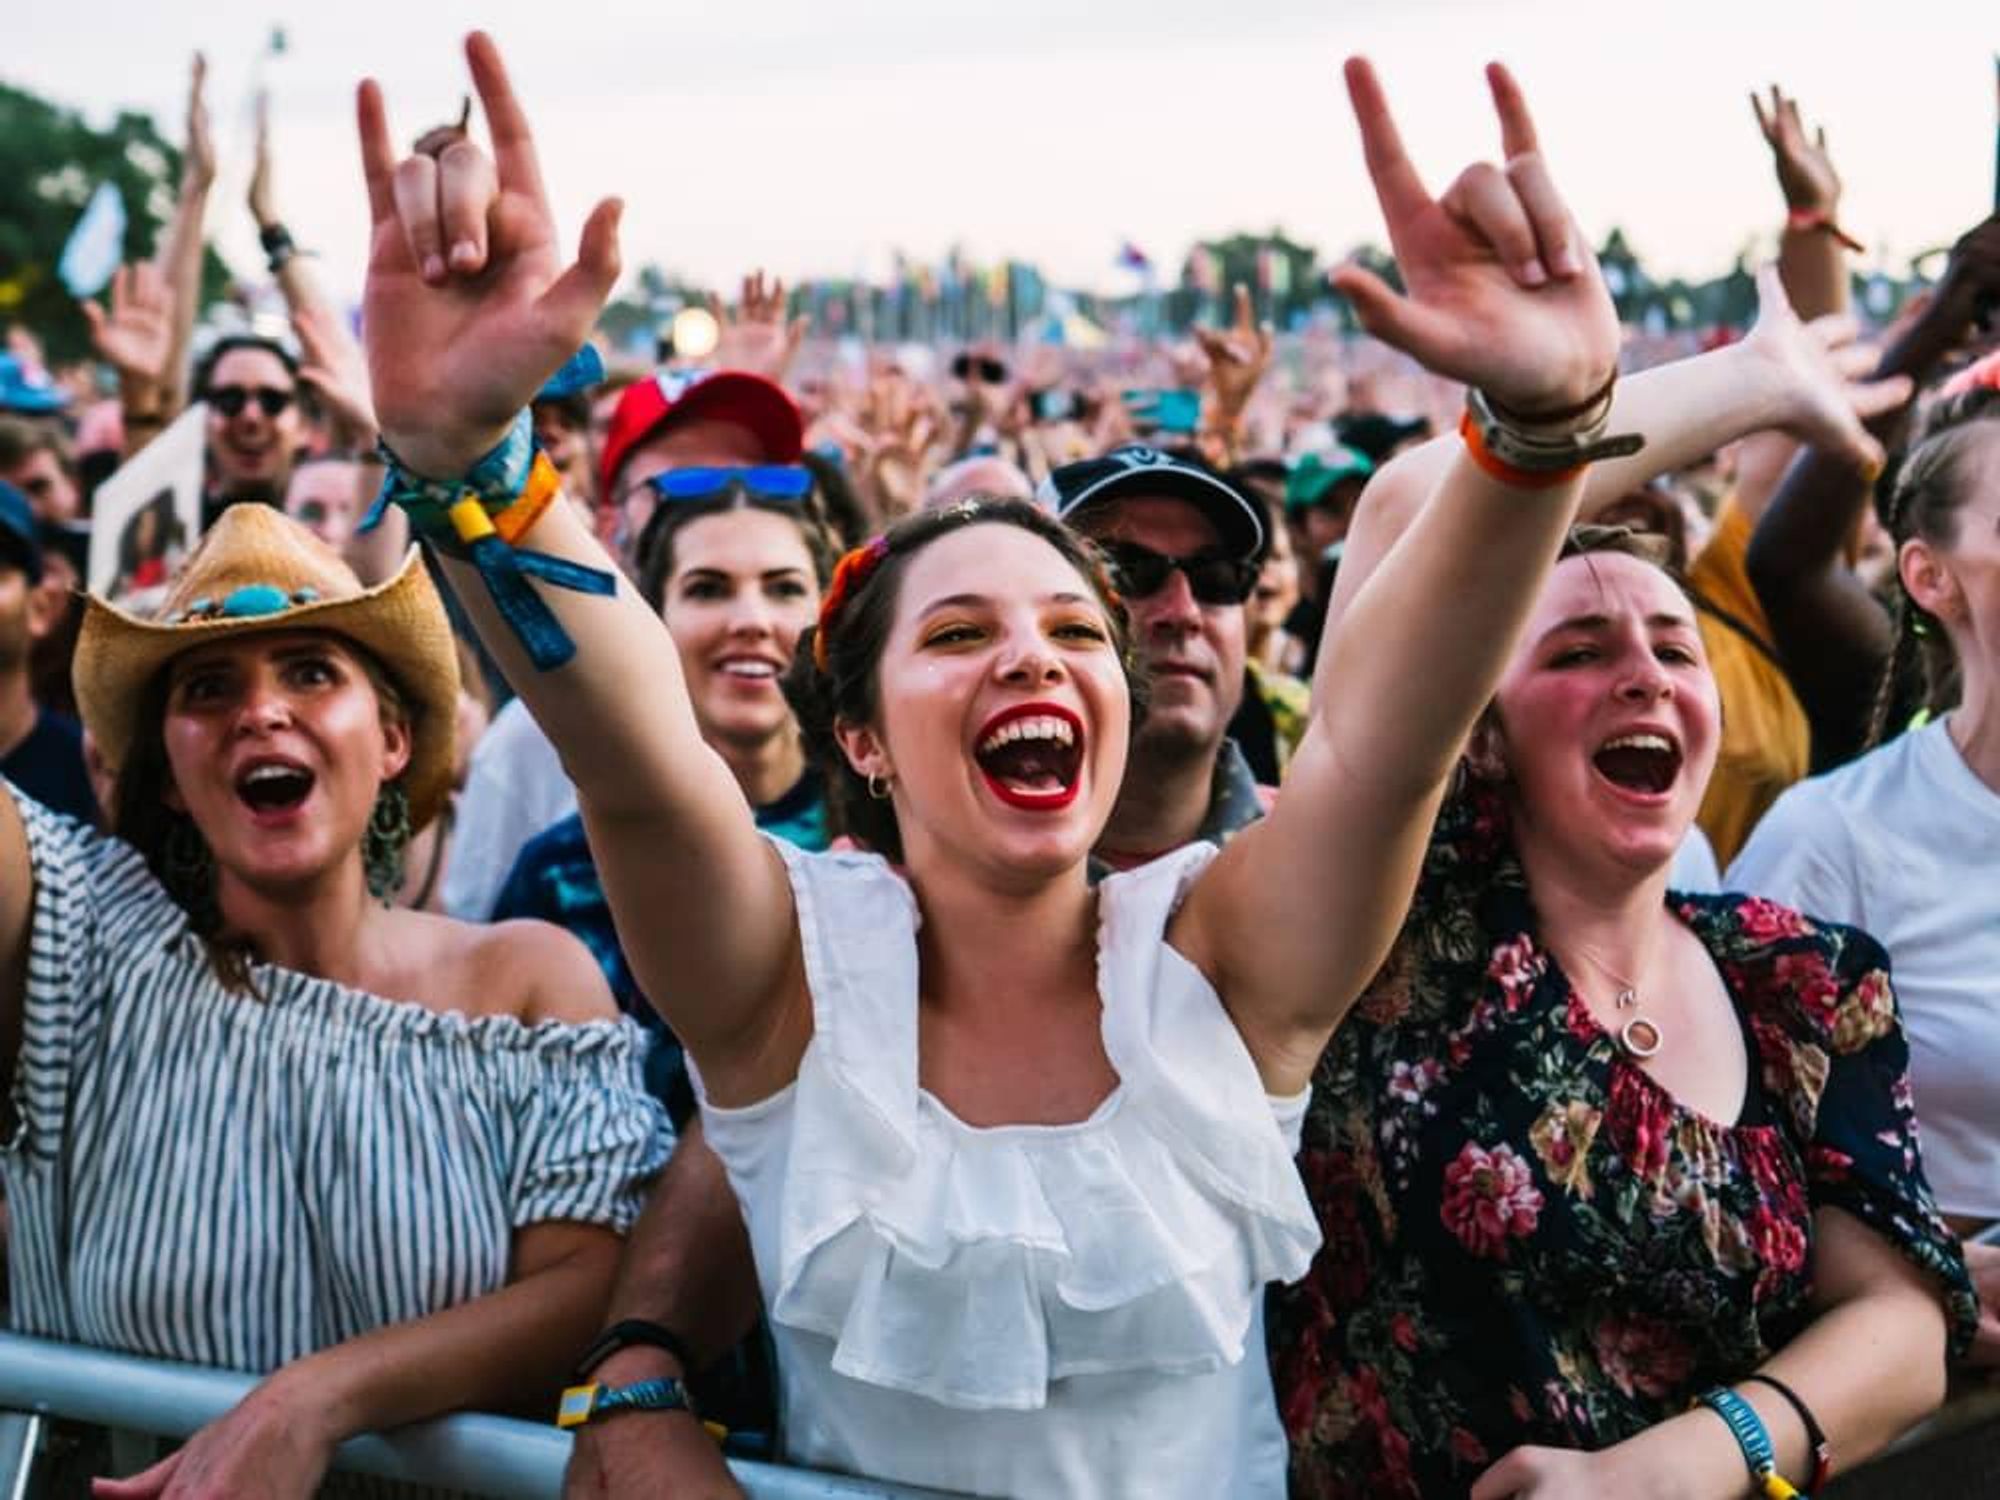 Austin City Limits Music Festival 2019 crowd